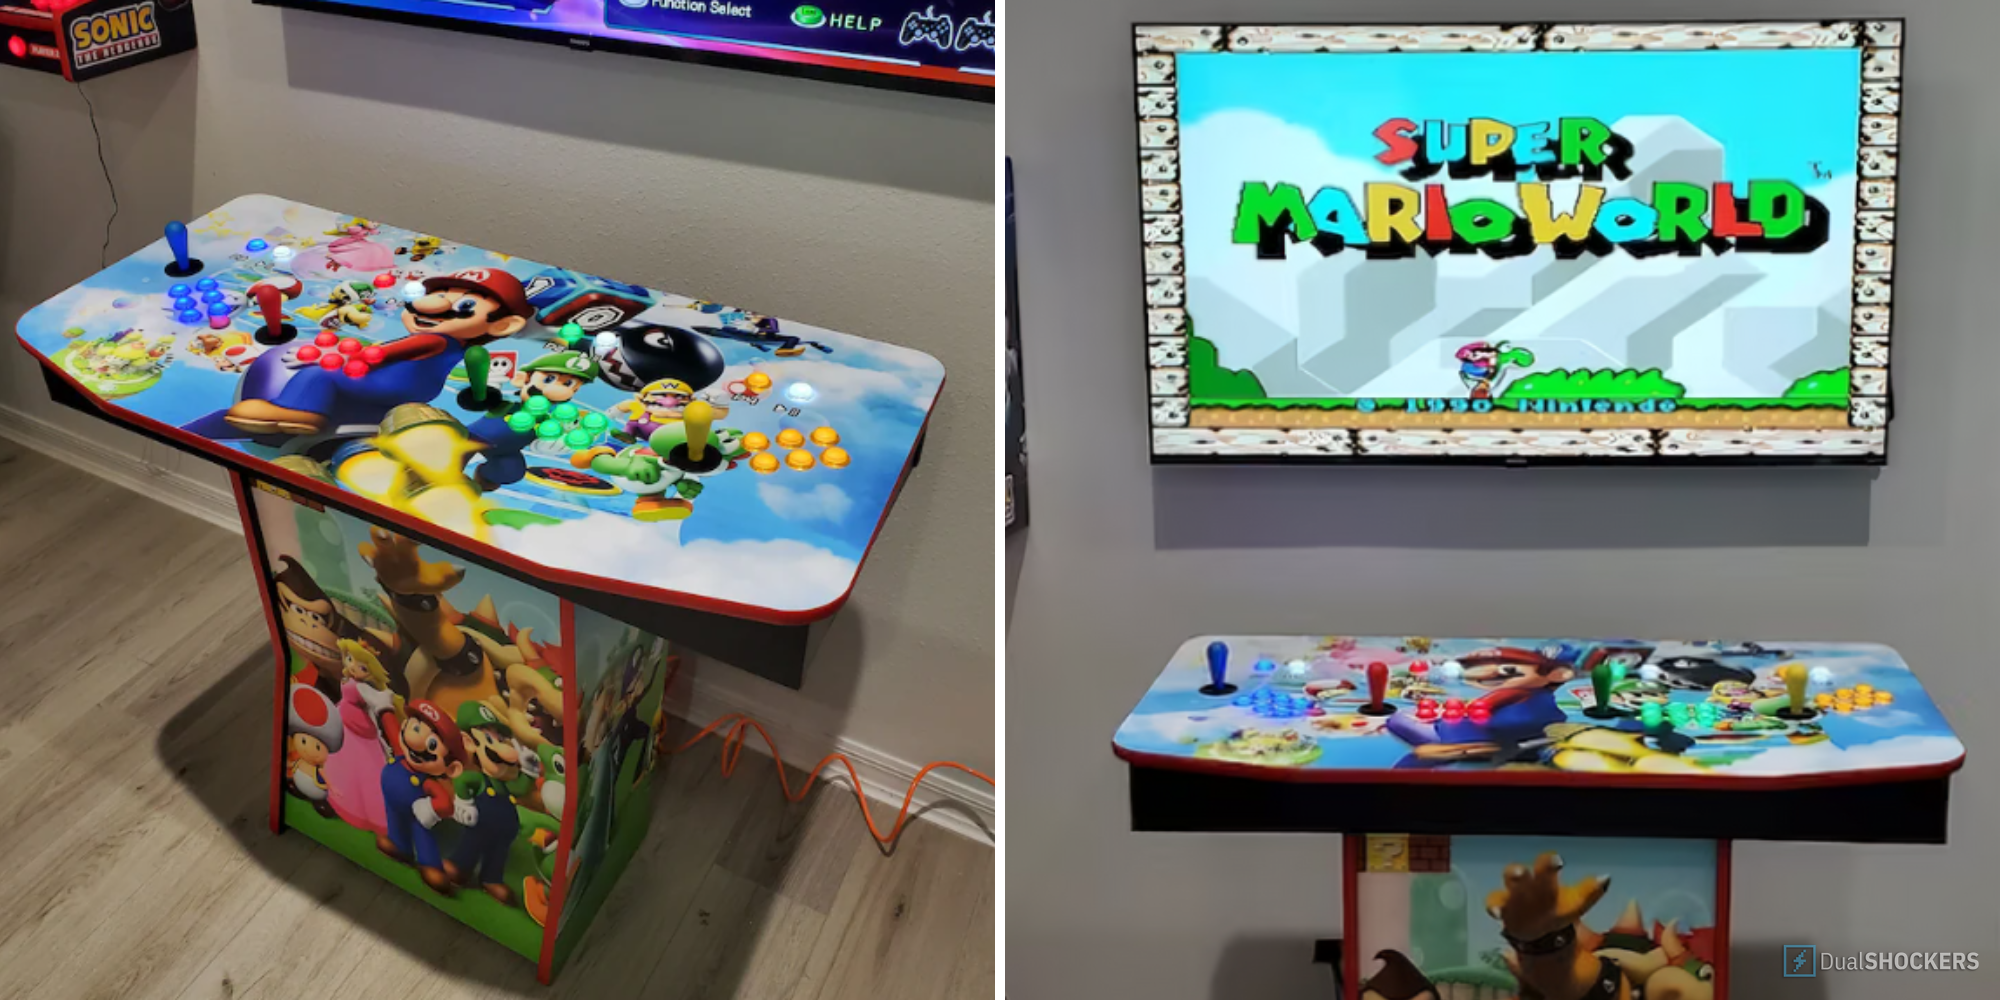 Super Mario World Arcade Machine